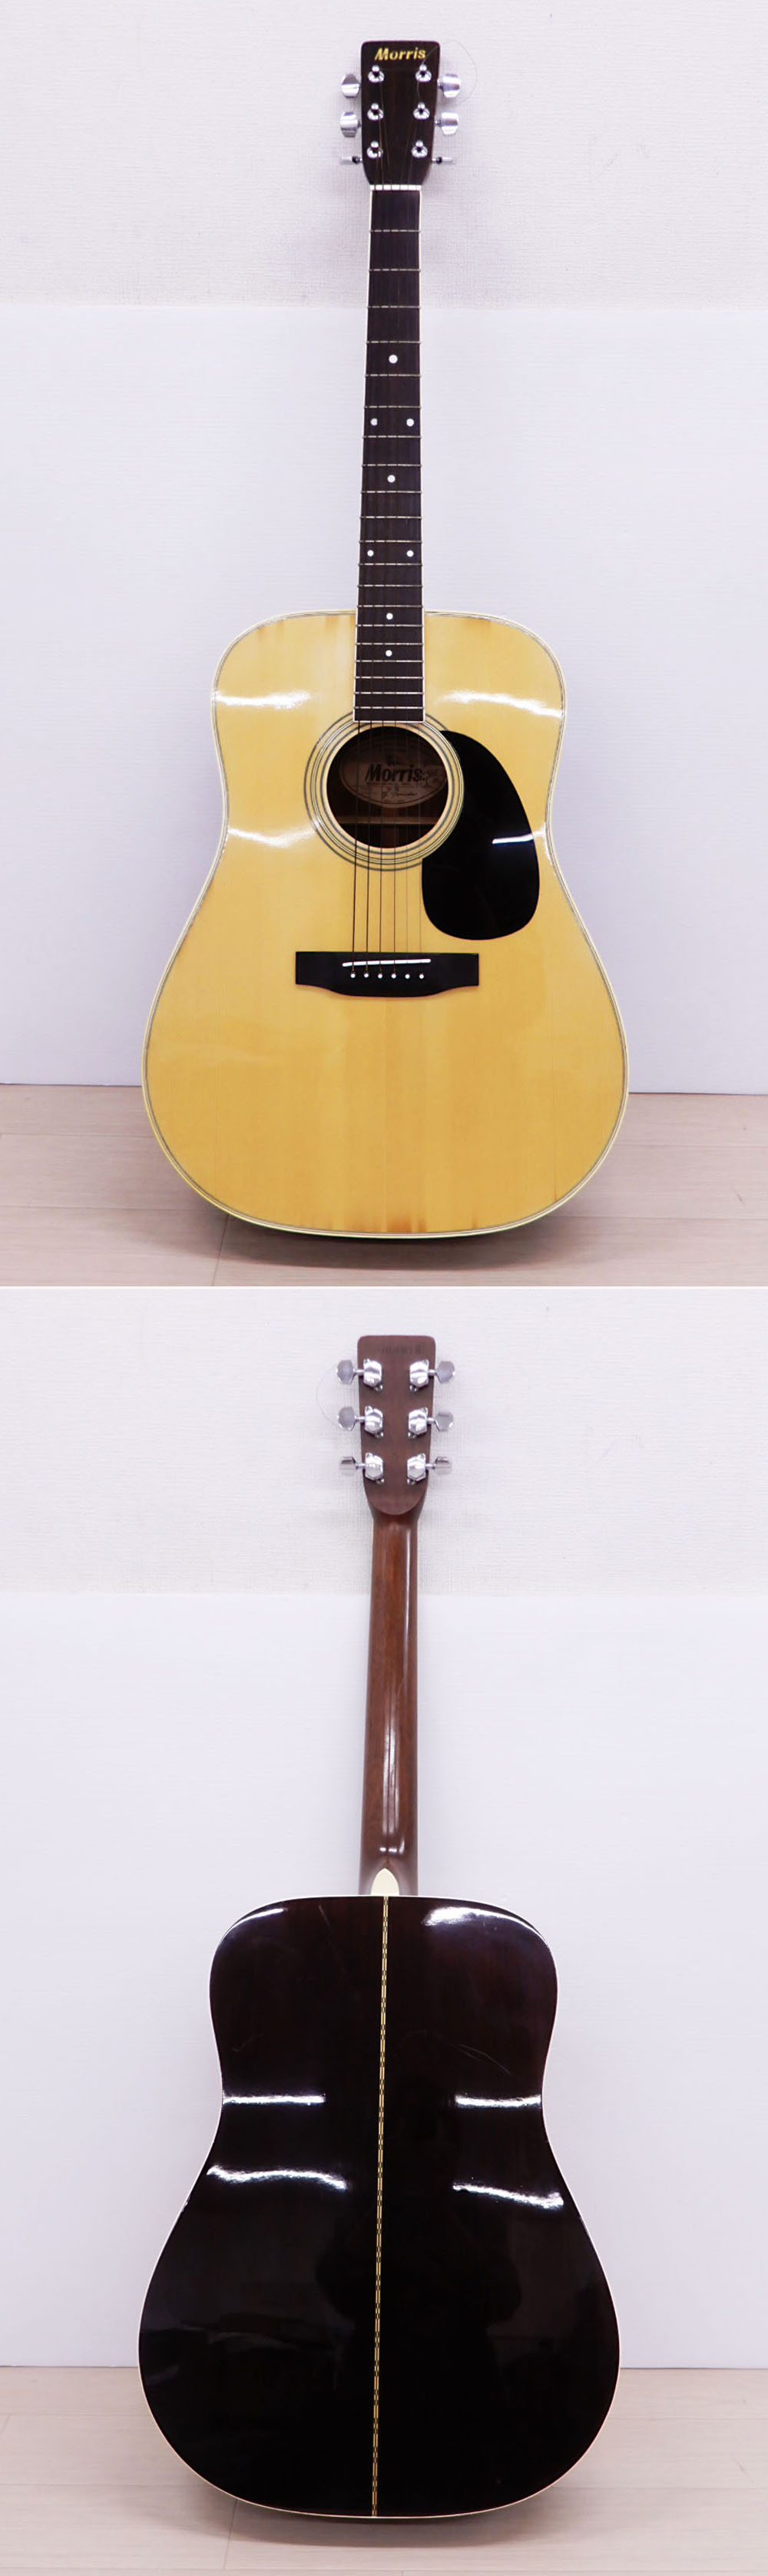 【販売正本】○◎Morris モーリス アコースティックギター W-25 アコギ 弦器 器 モーリス